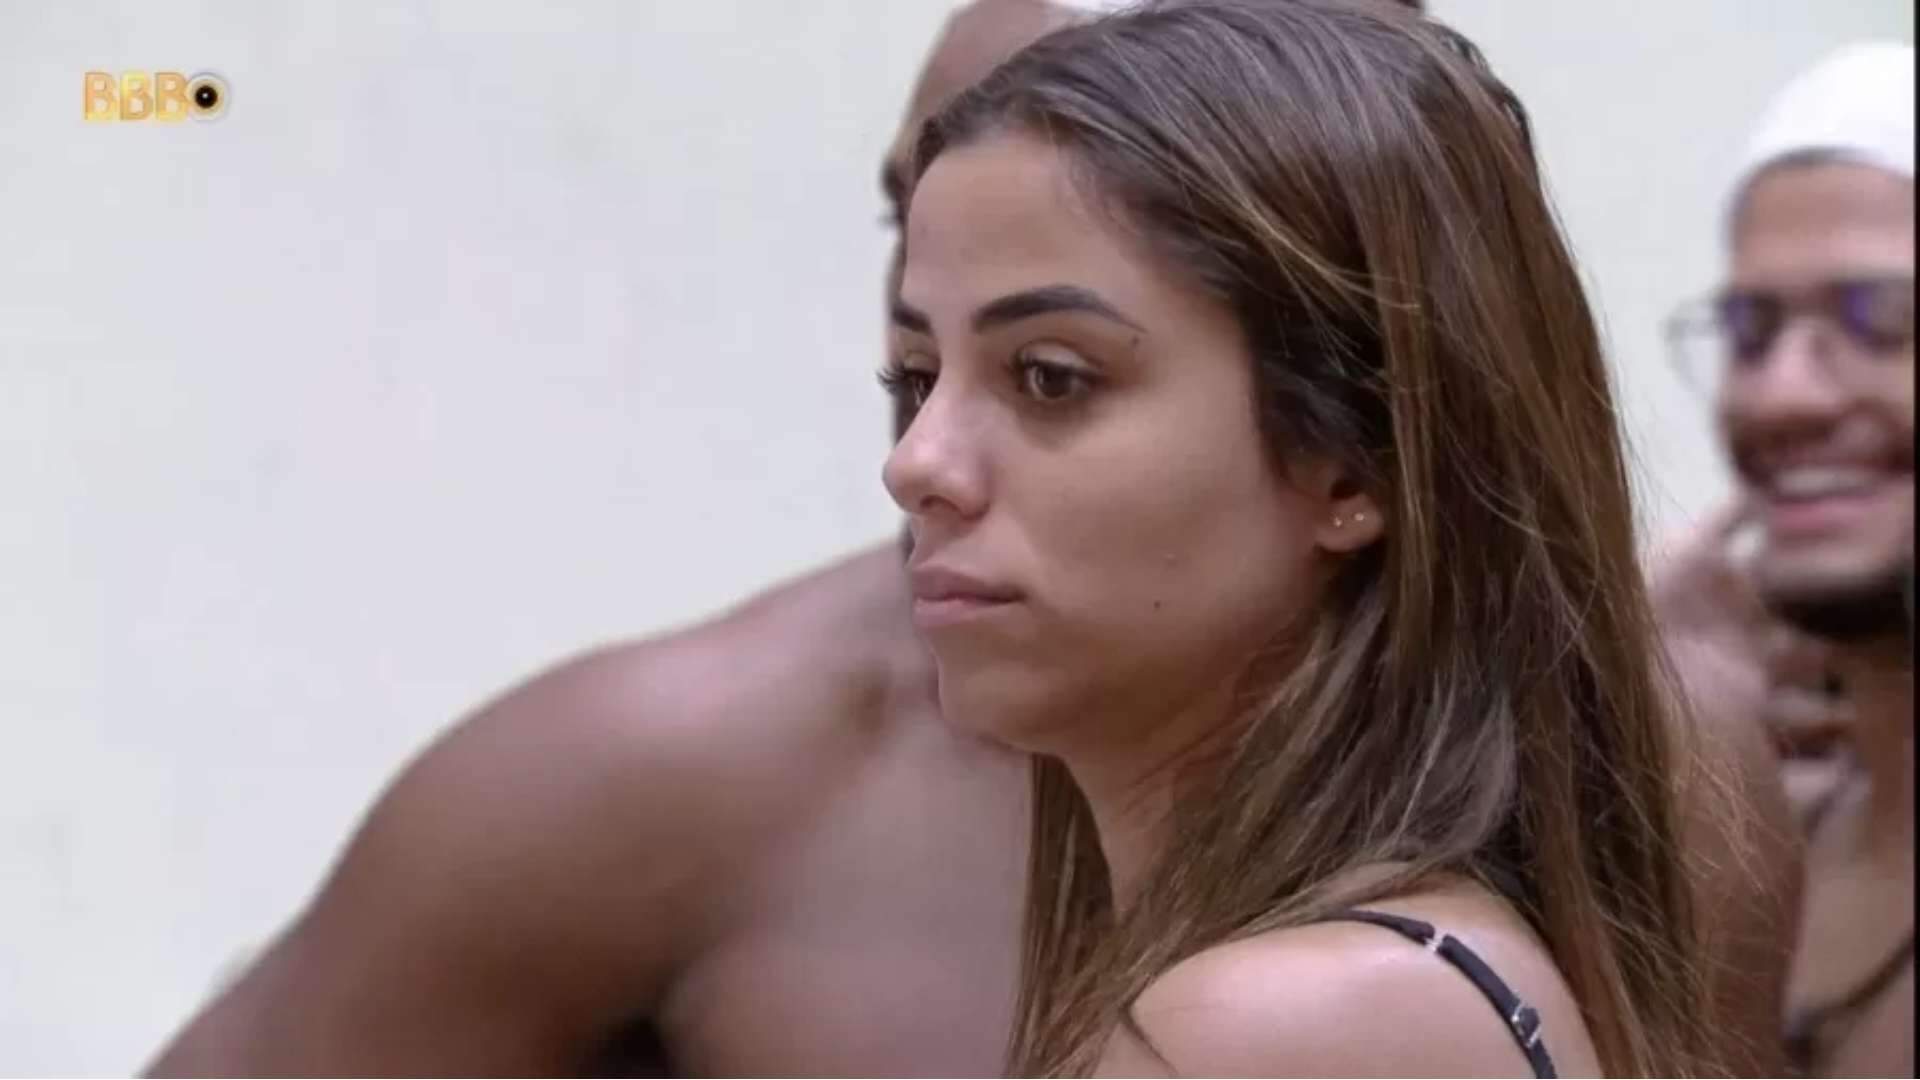 BBB 23: Key Alves compara Bruna Griphao com ex-participante expulsa do reality: “É agressão!” - Metropolitana FM